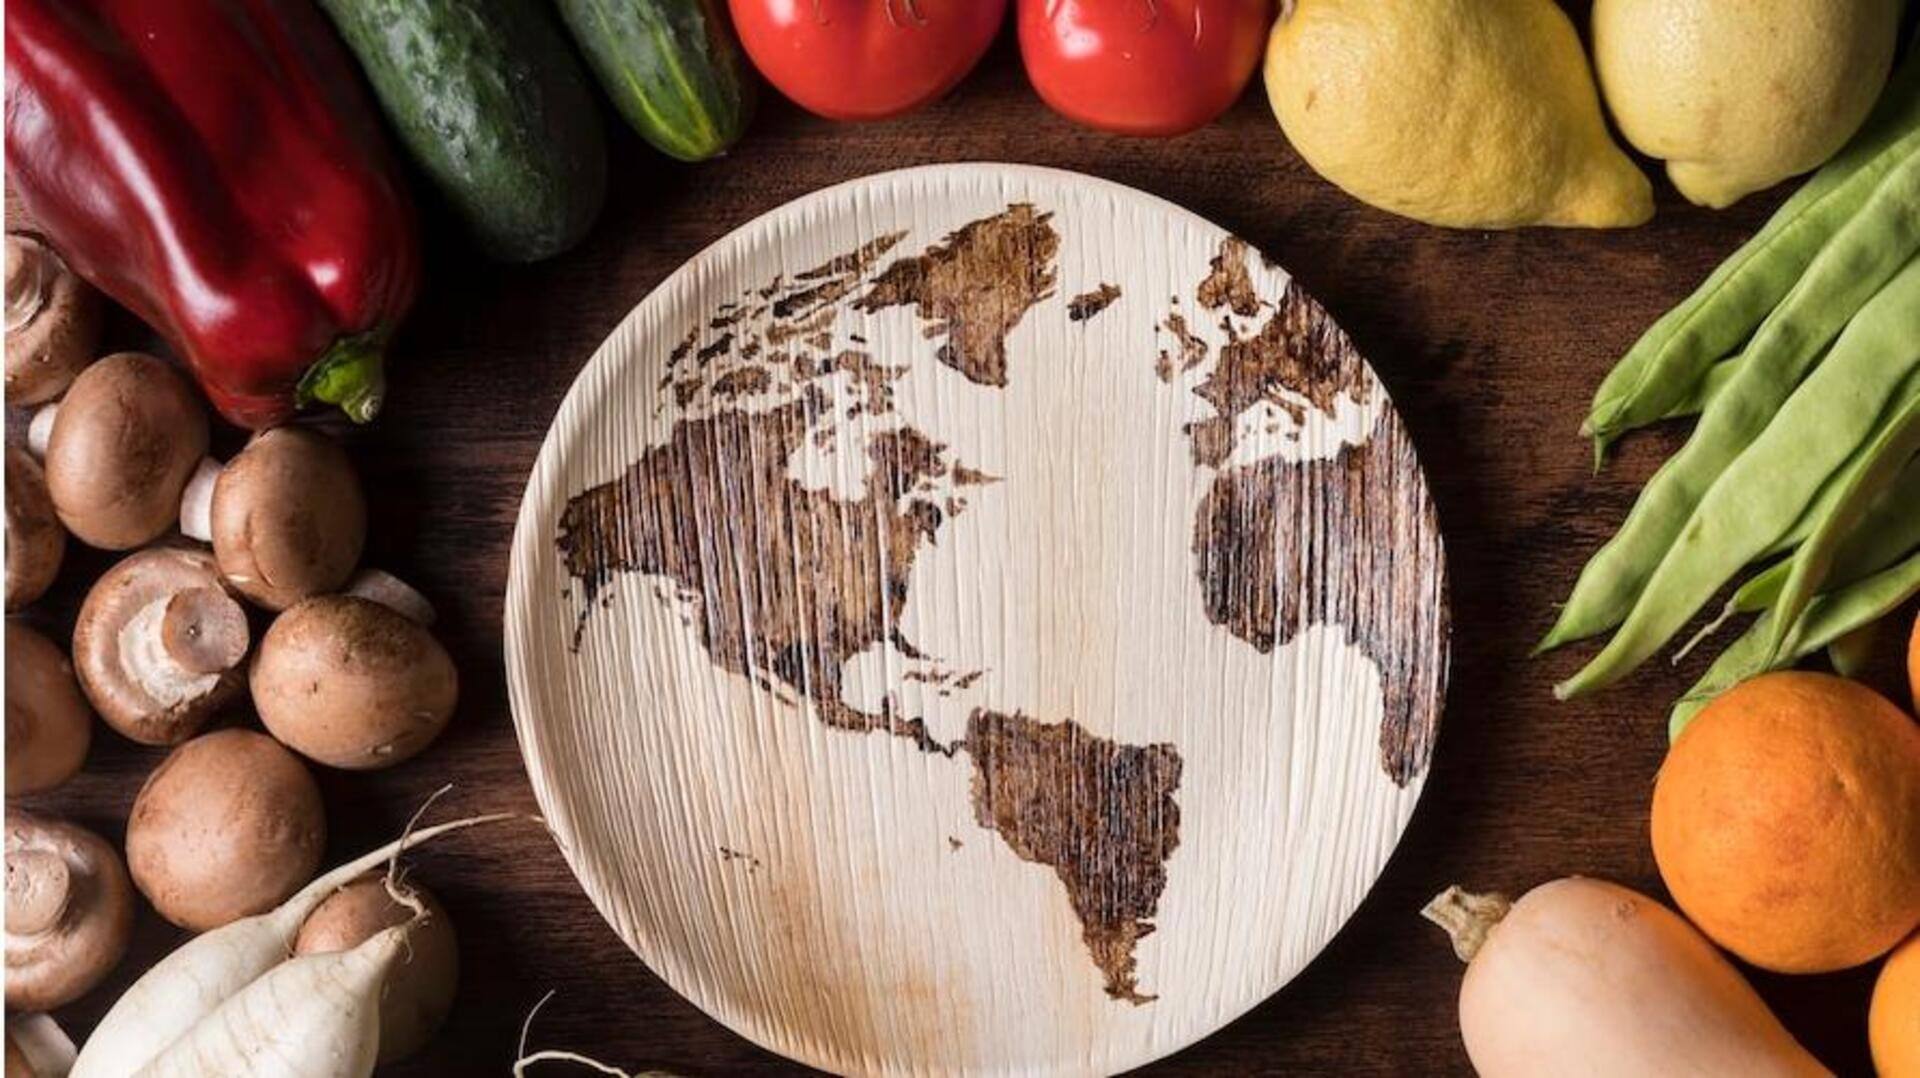 विश्व खाद्य सुरक्षा दिवस 2023: इस दिन को मनाने का कारण, महत्व और थीम